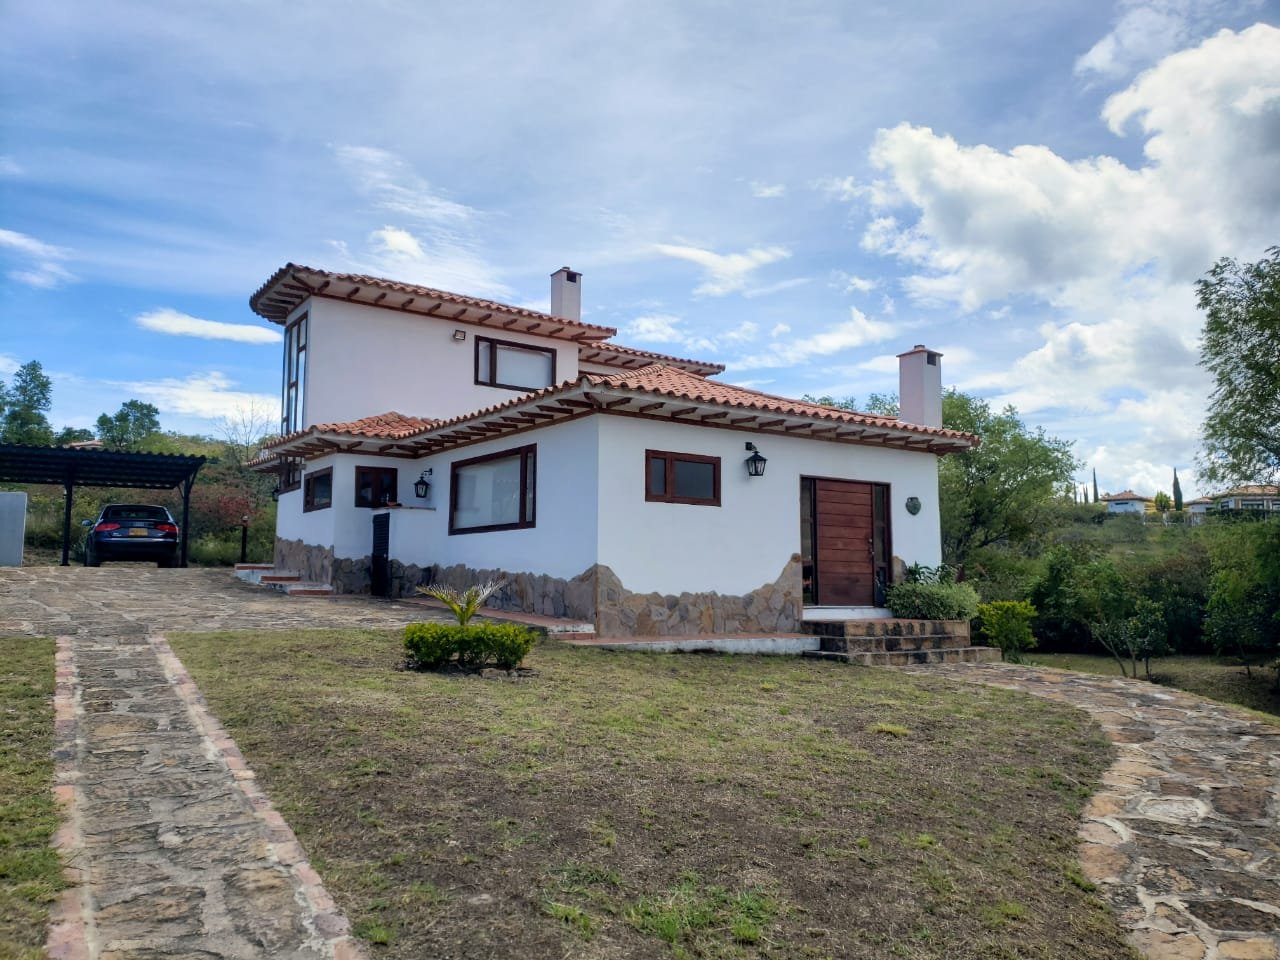 Casa Mediterránea - Villa de Leyva - Casas Campestres - Inversiones Villa de Leyva - Boyacá